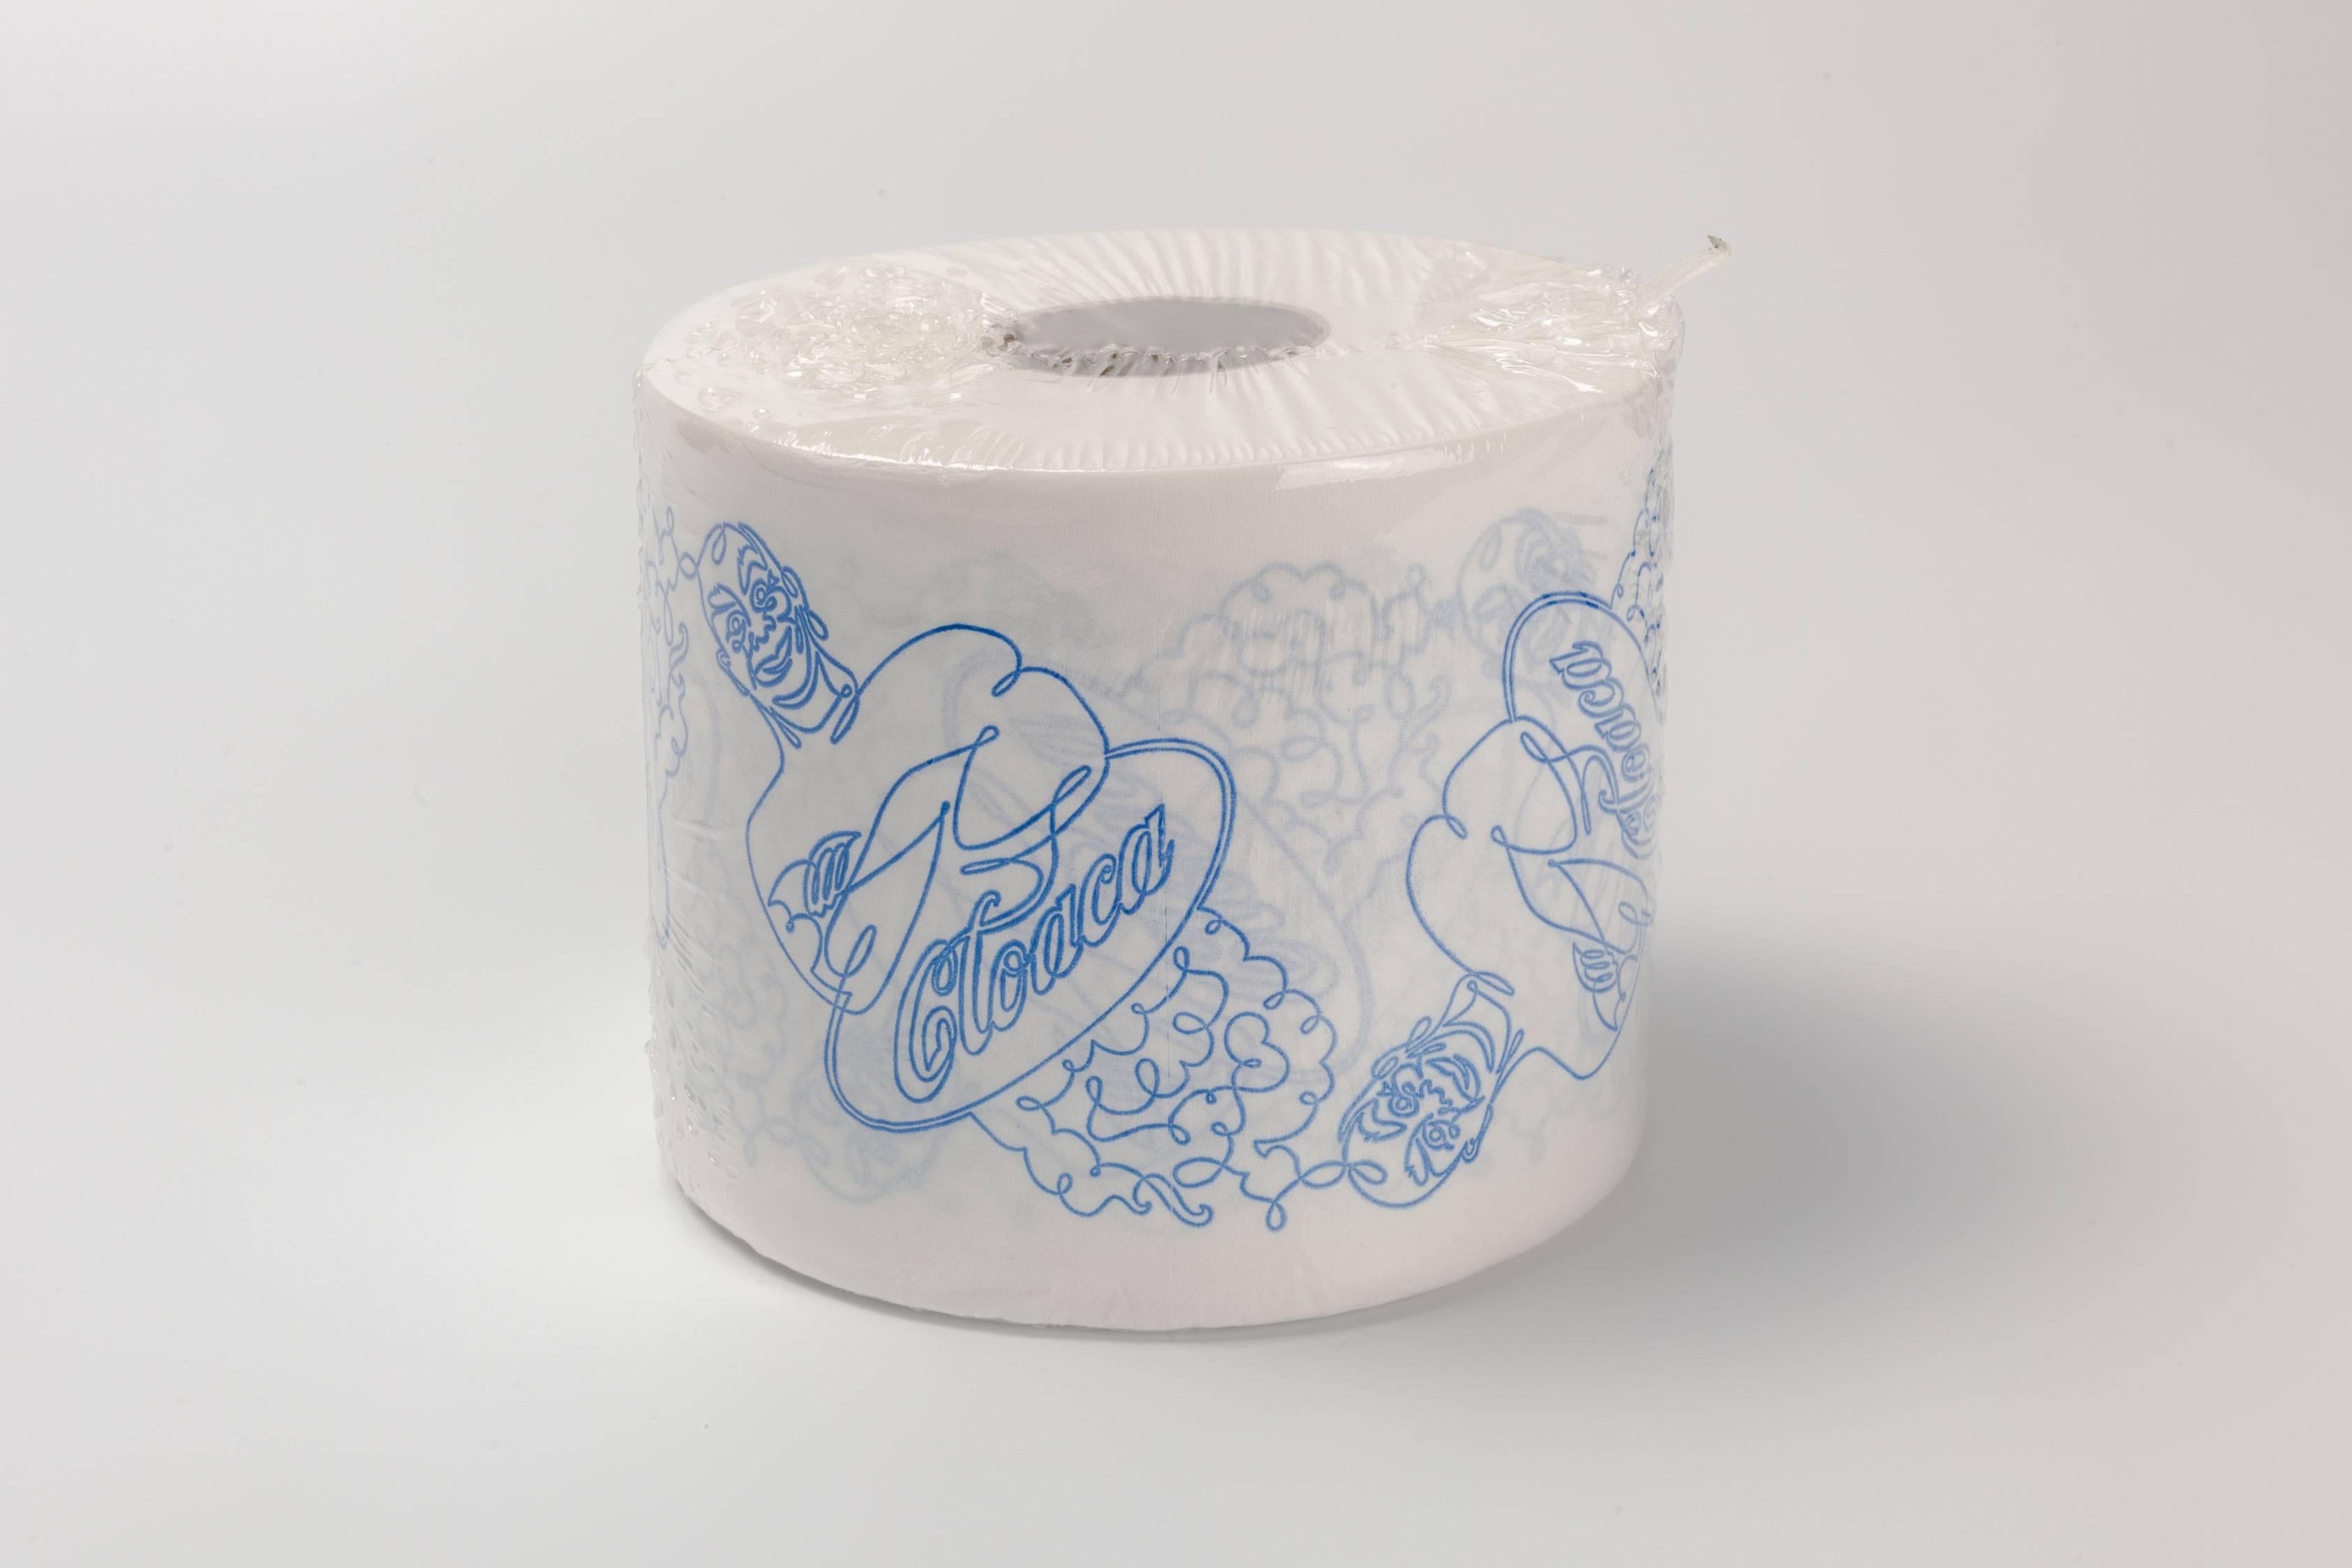 Belgian Super Cloaca Toilet Paper Roll, Wim Delvoye, 2007